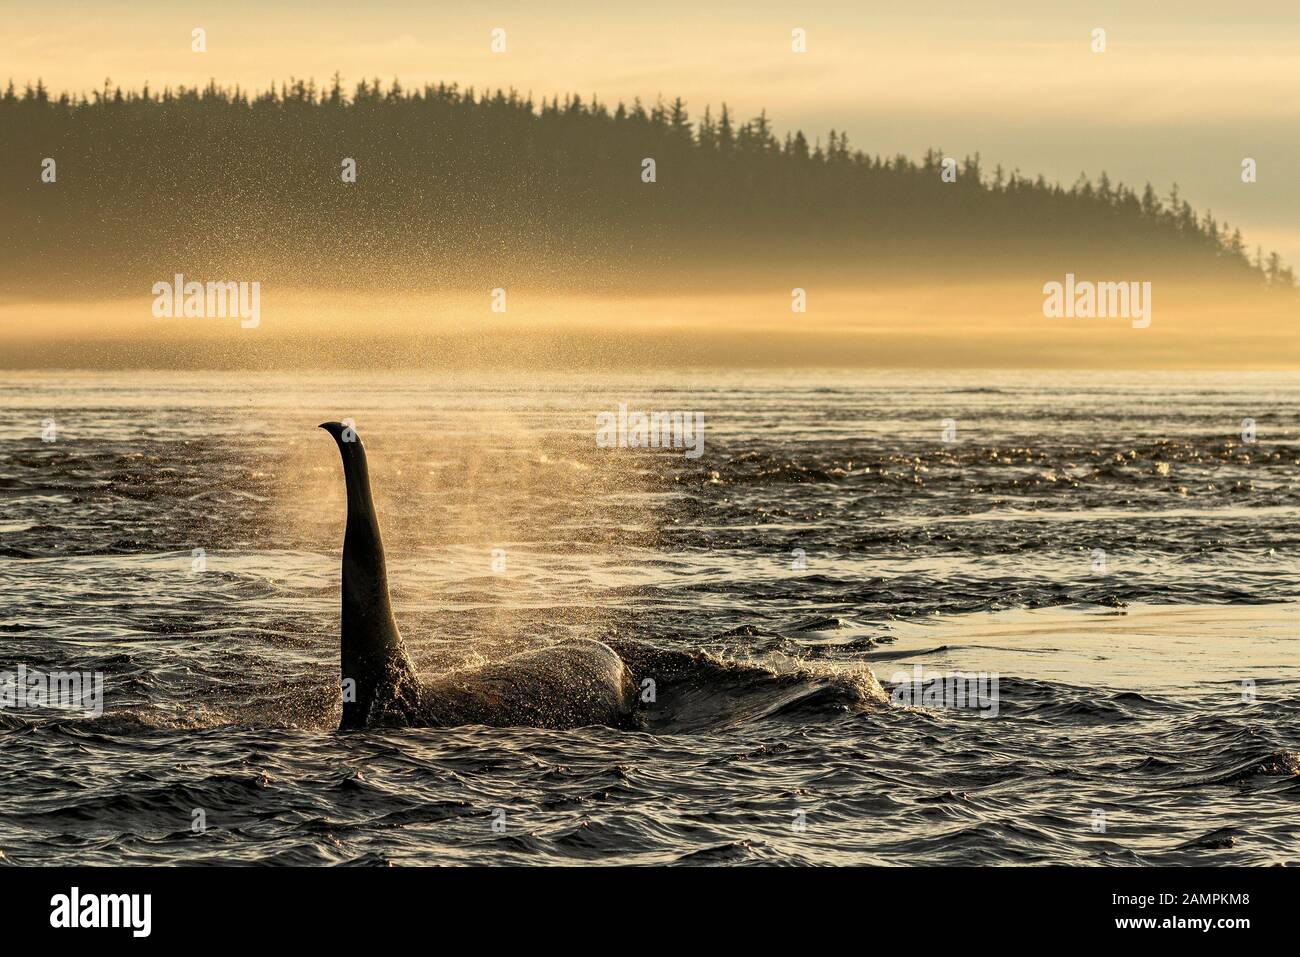 A61, orche orcinus, orche residenti nel nord, poco dopo l'alba nello stretto di Johnstone, territorio Delle prime Nazioni, Columbia Britannica, Canada. Foto Stock